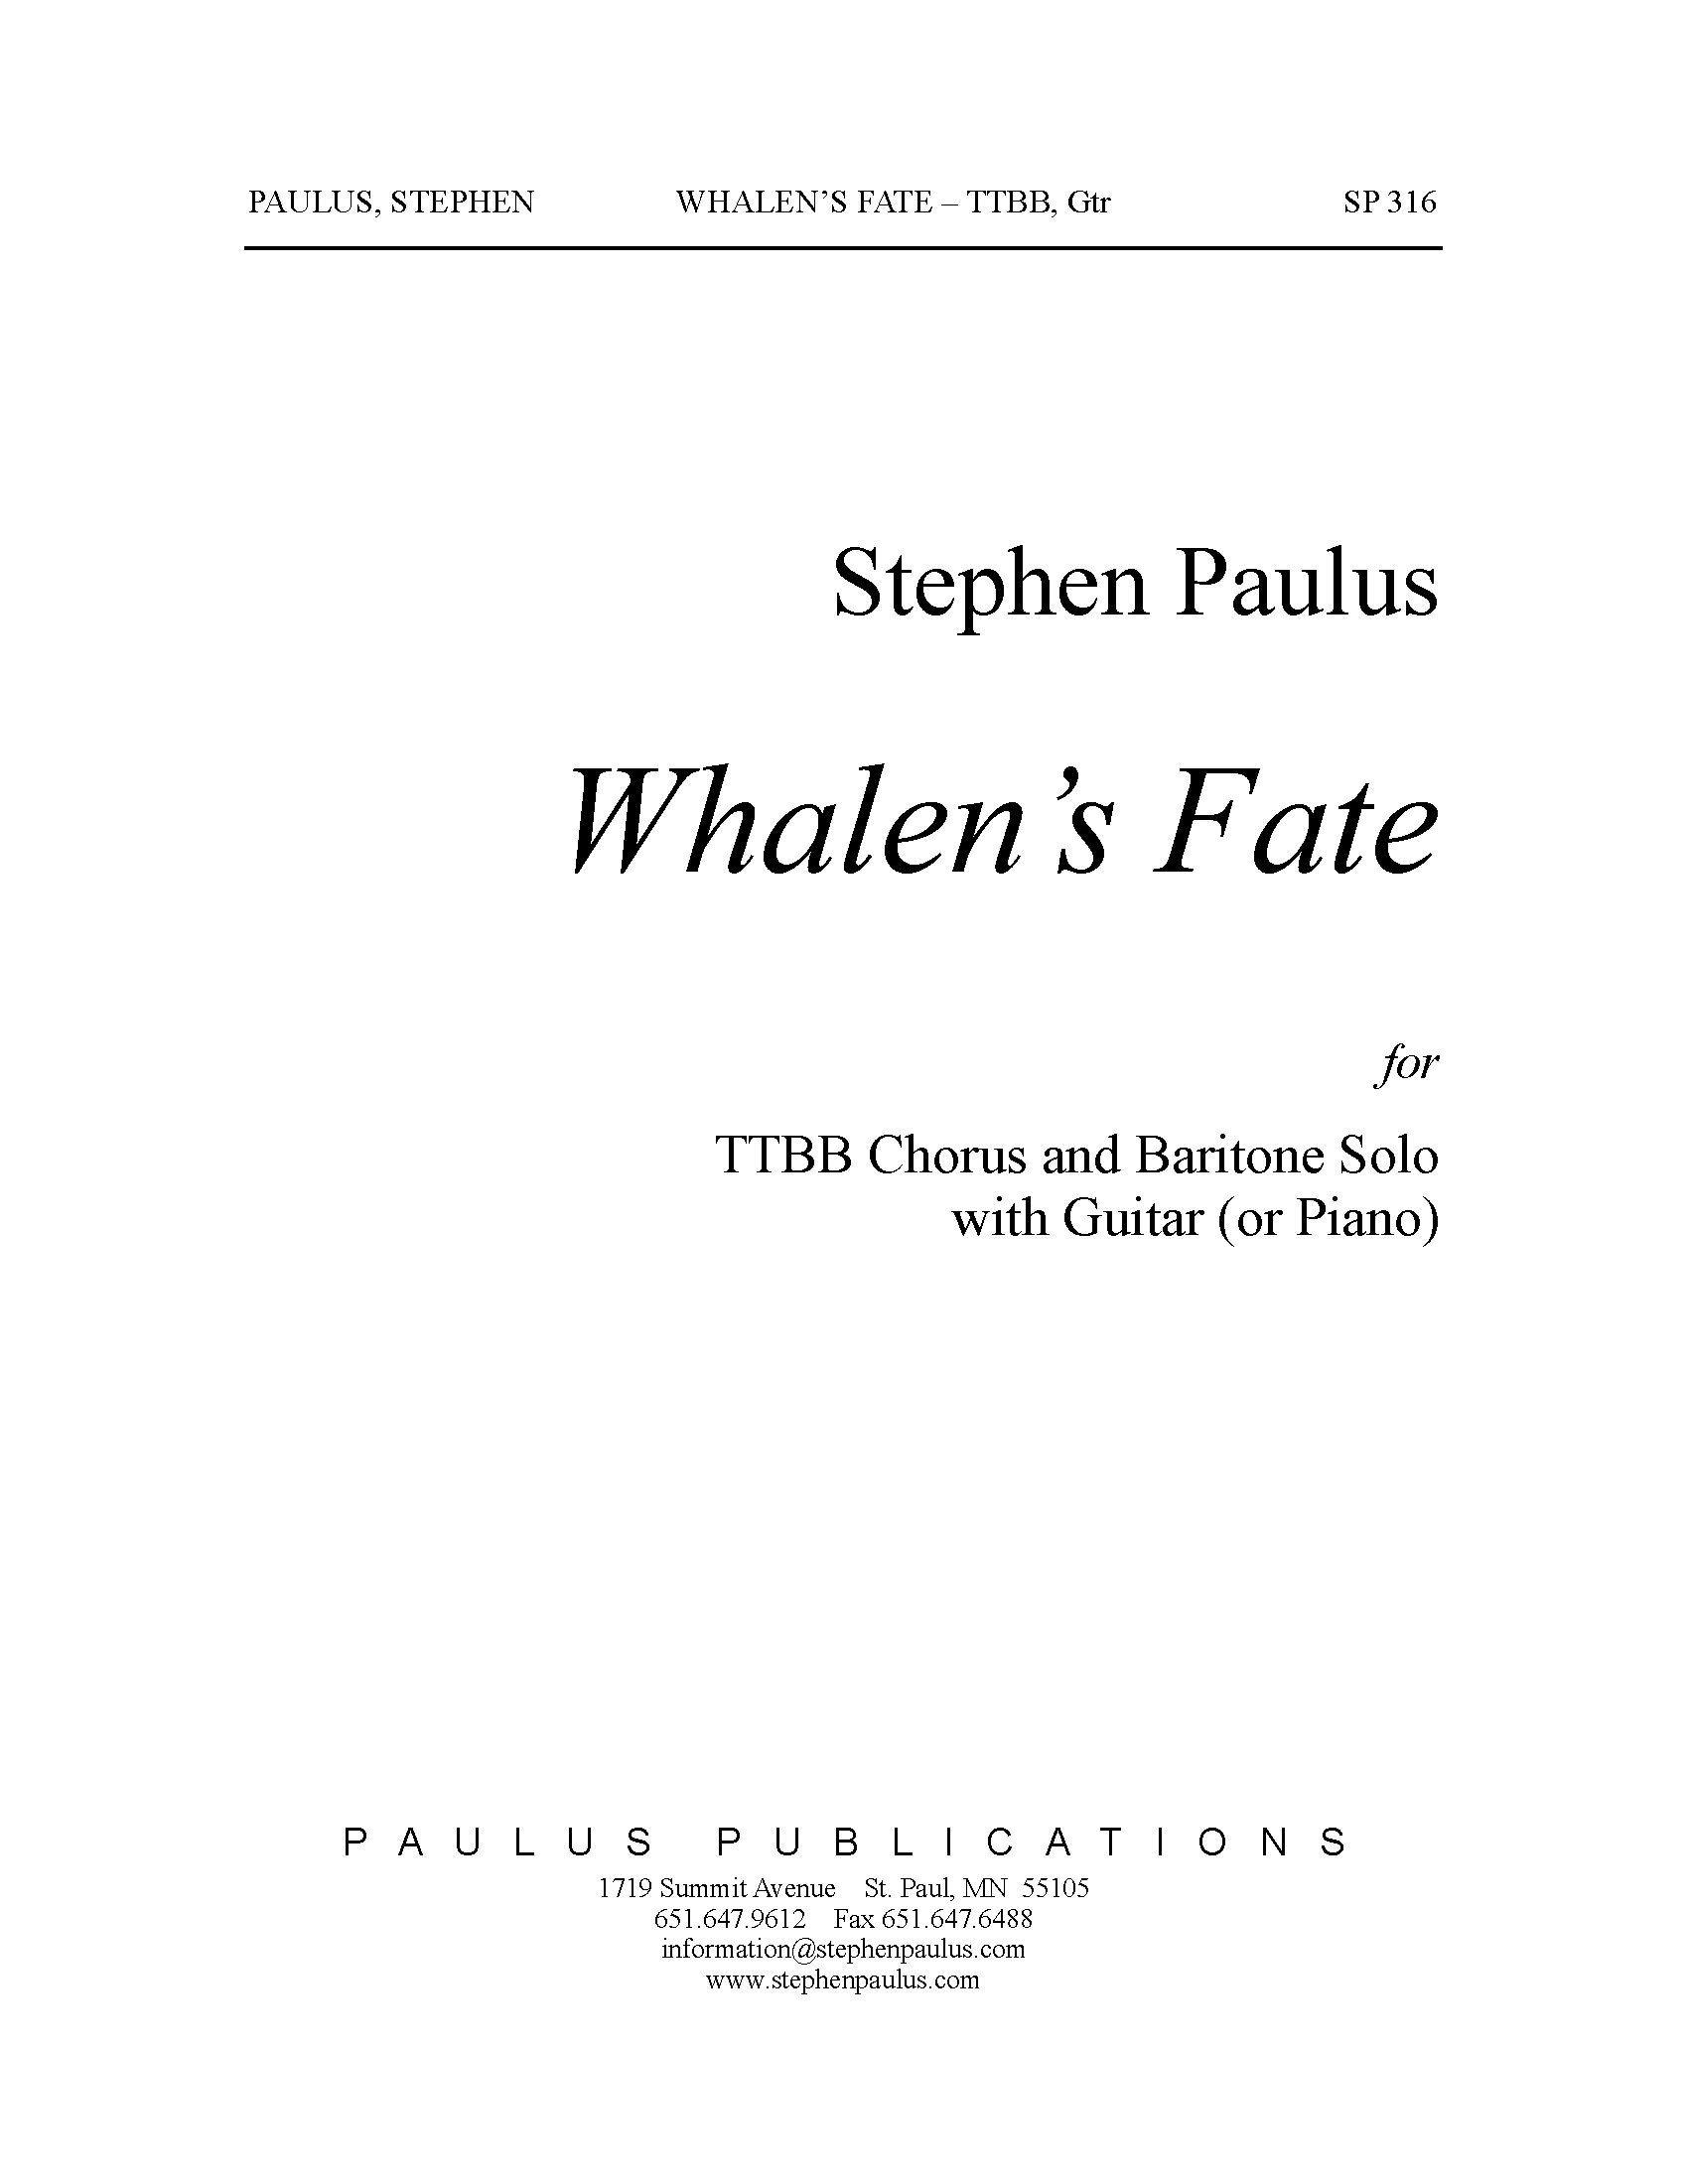 Whalen's Fate for Bar. solo, TTBB Chorus & Guitar (or Piano)